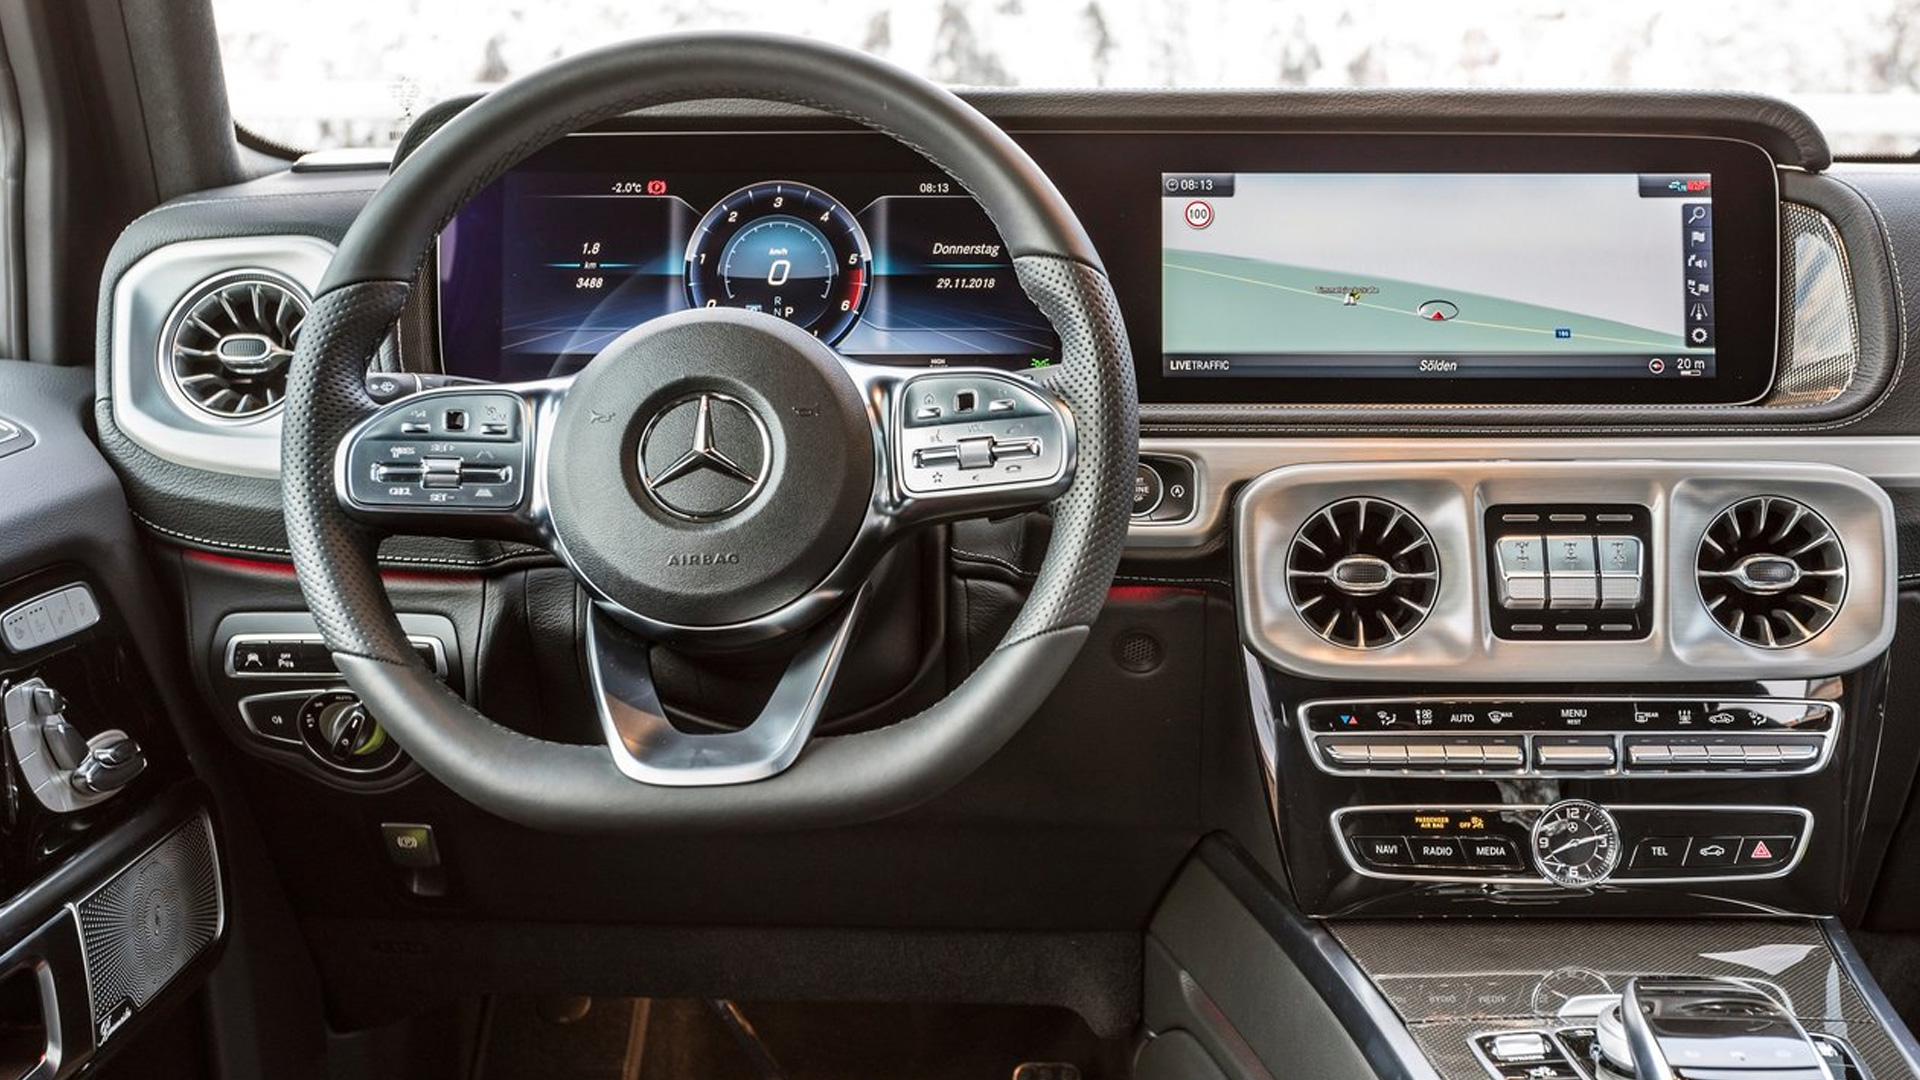 Mercedes Benz G-Class 2019 350d Exterior